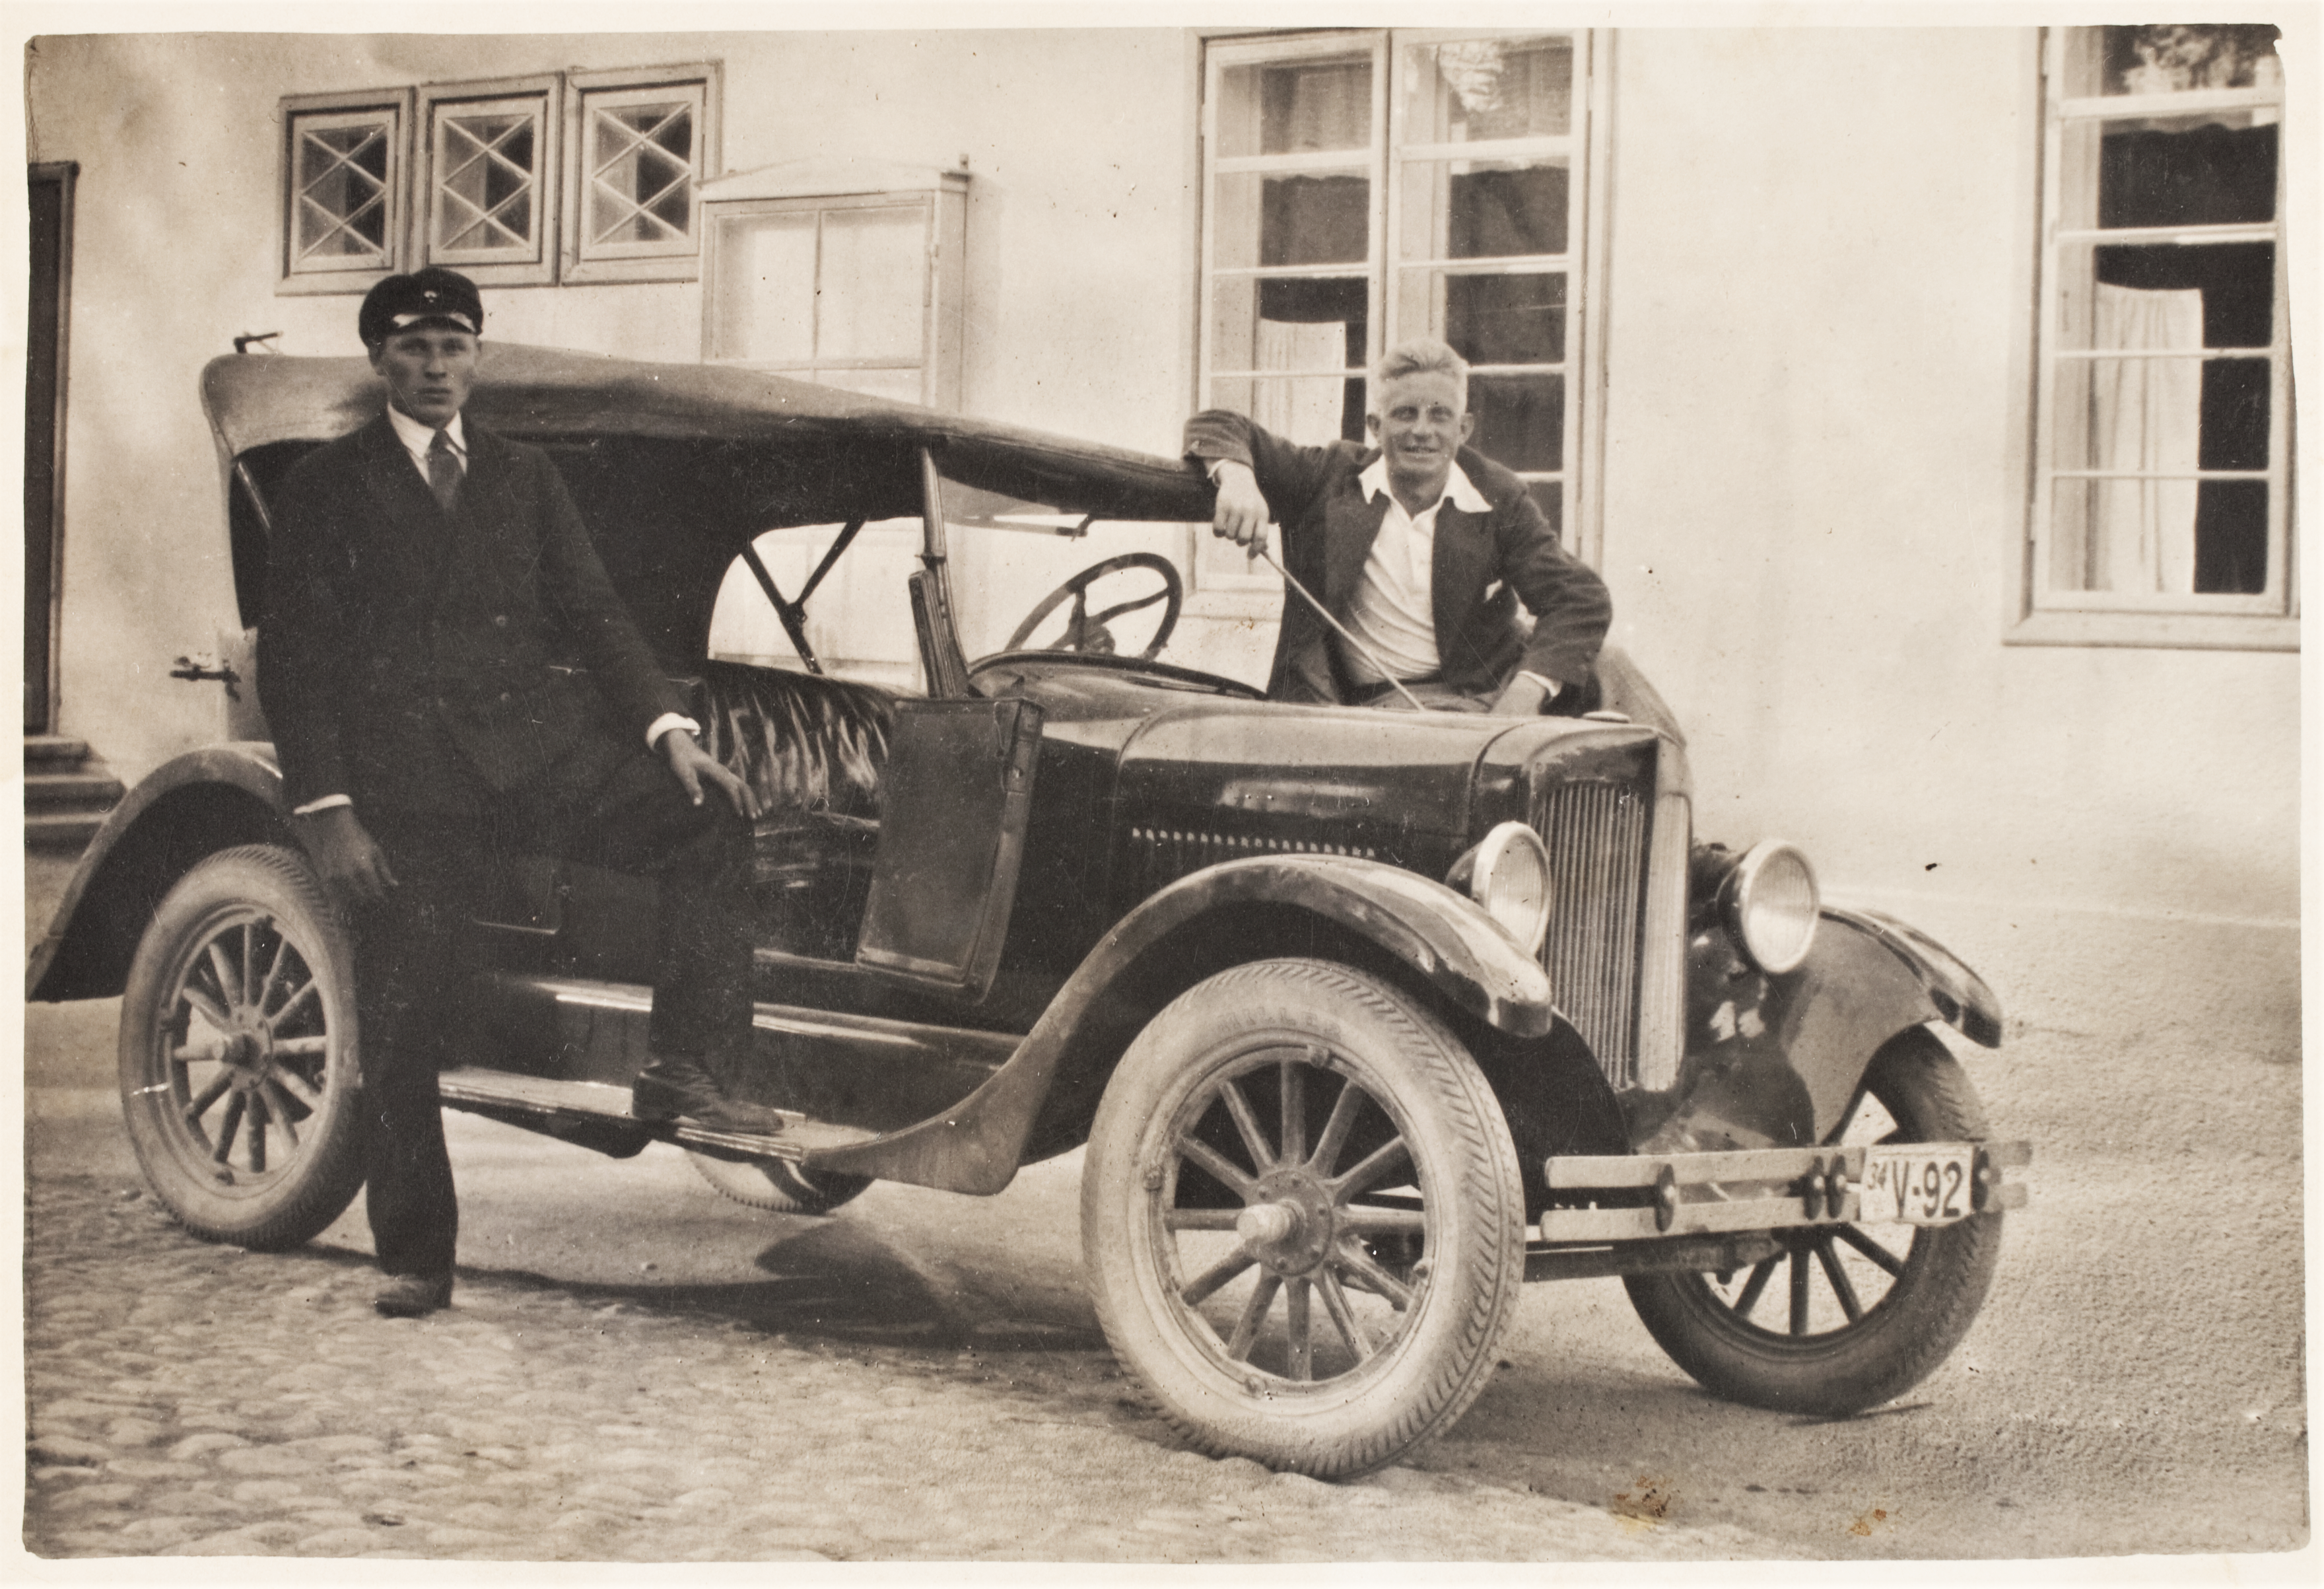 Põltsamaa vanadel fotodel: Automobiil põllumeeste seltsi maja ees Veski tänaval, 1934. aastal. Foto Eesti Rahva Muuseumist. Fotograaf teadmata